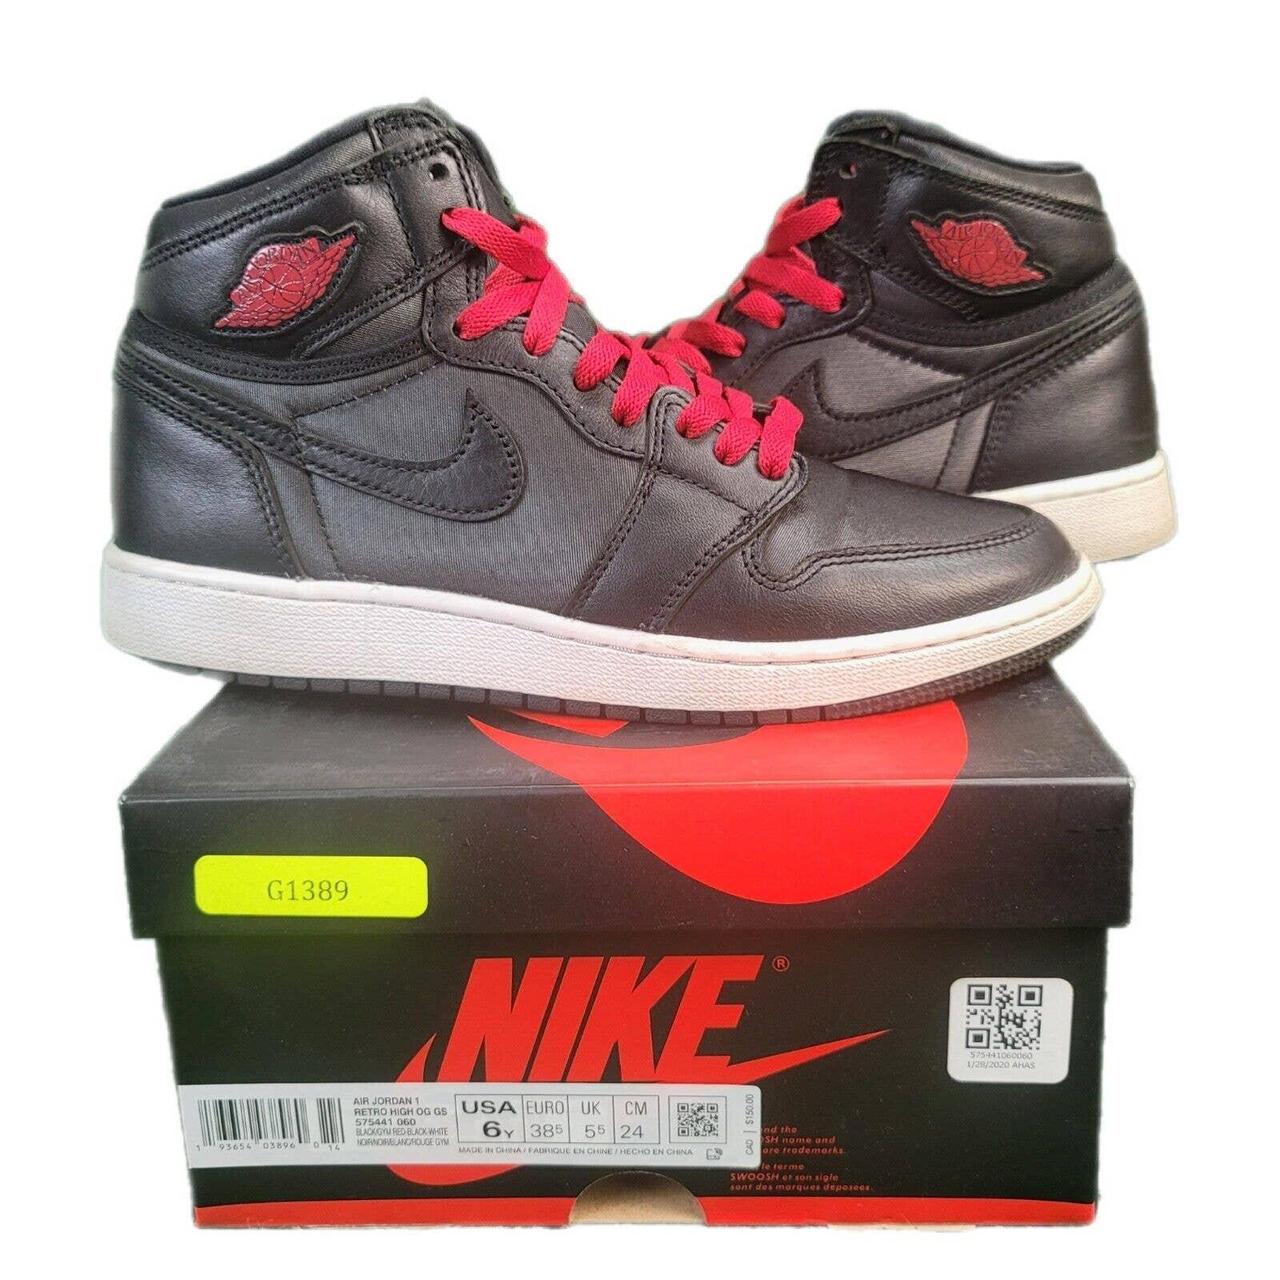 Nike Air Jordan 1 High OG Satin Black Gym Red... - Depop